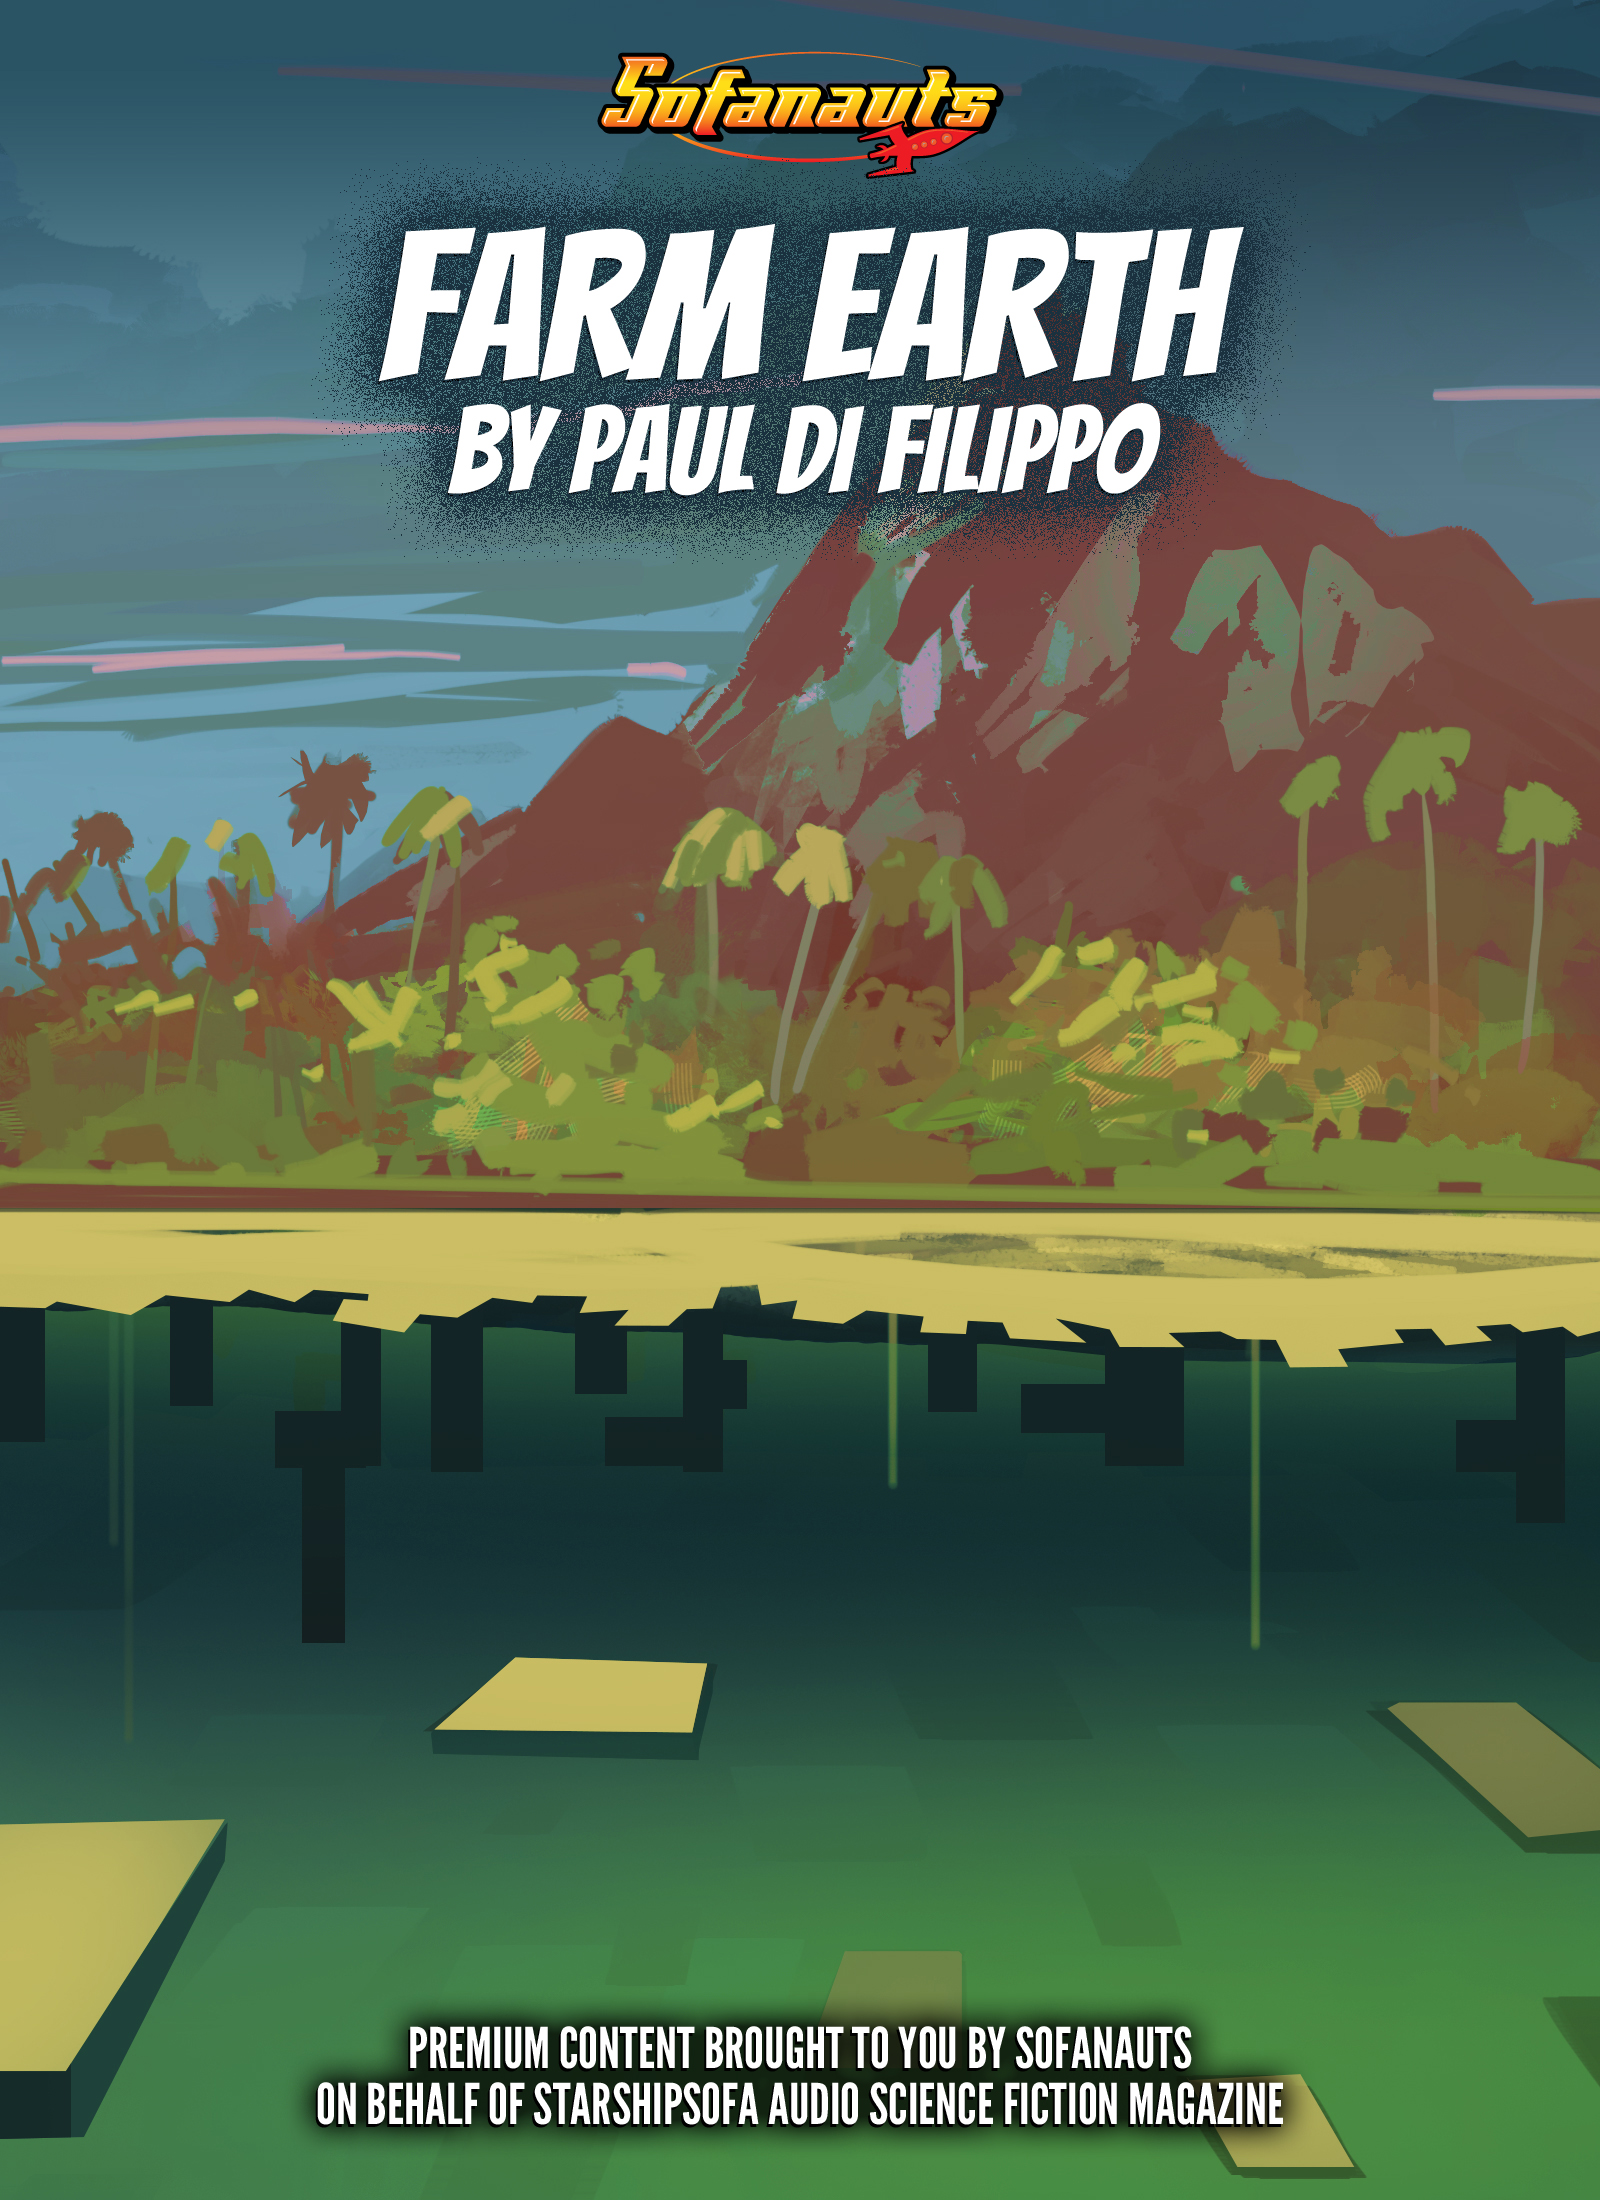 FarmEarth, by Paul Di Filippo. Cover illustration by Scott Pellico